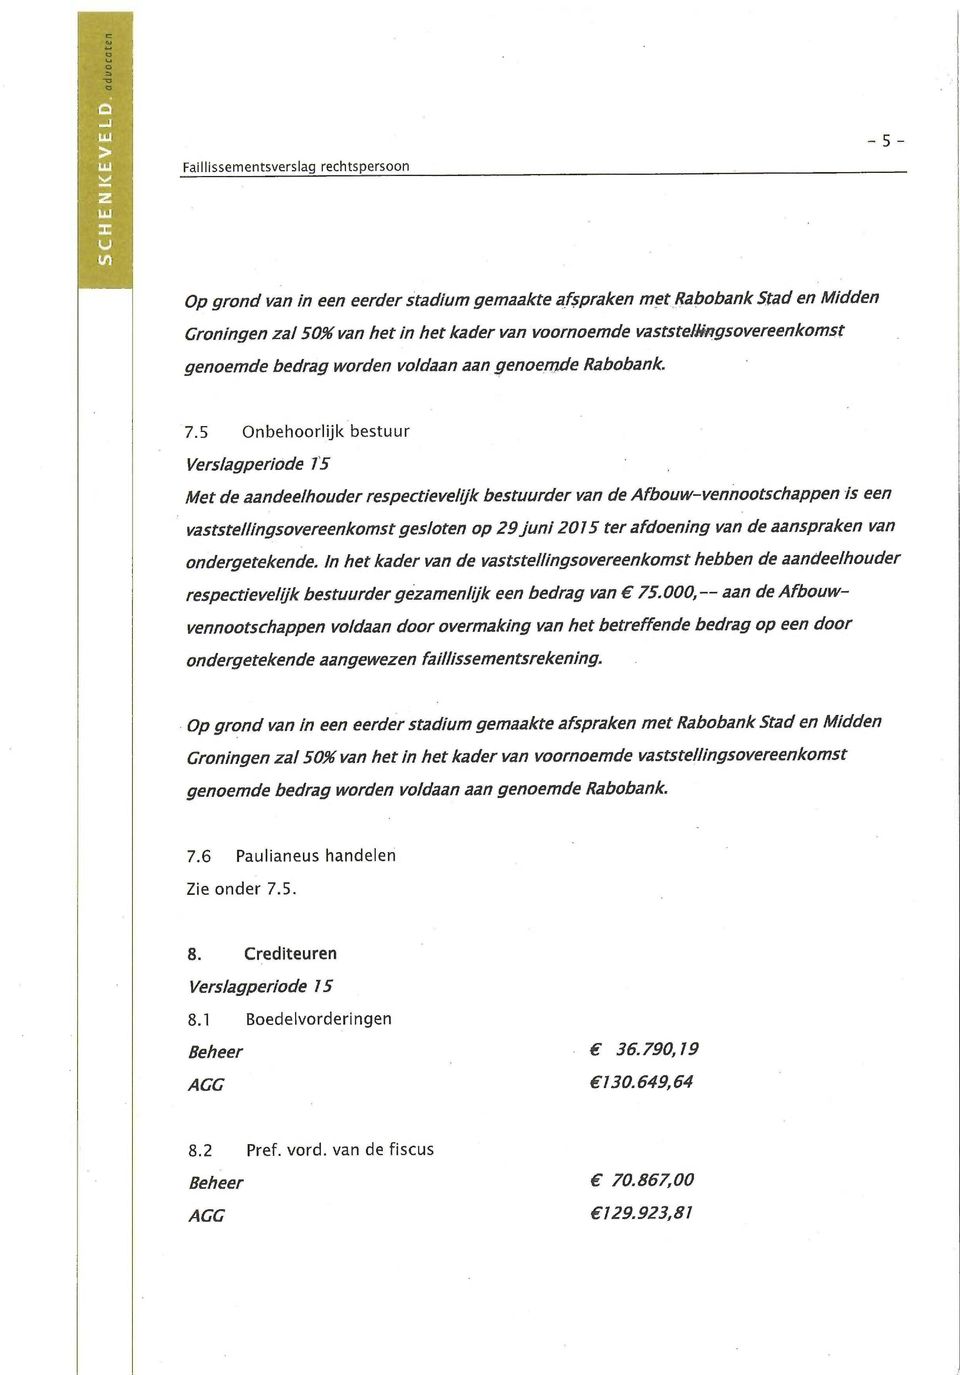 5 Onbehoorlijk bestuur Verslagperiode Met de aandeelhouder respectievelijk bestuurder van de Afbouw-vennootschappen is een vaststellingsovereenkomst gesloten op 29 juni 2015 ter afdoening van de